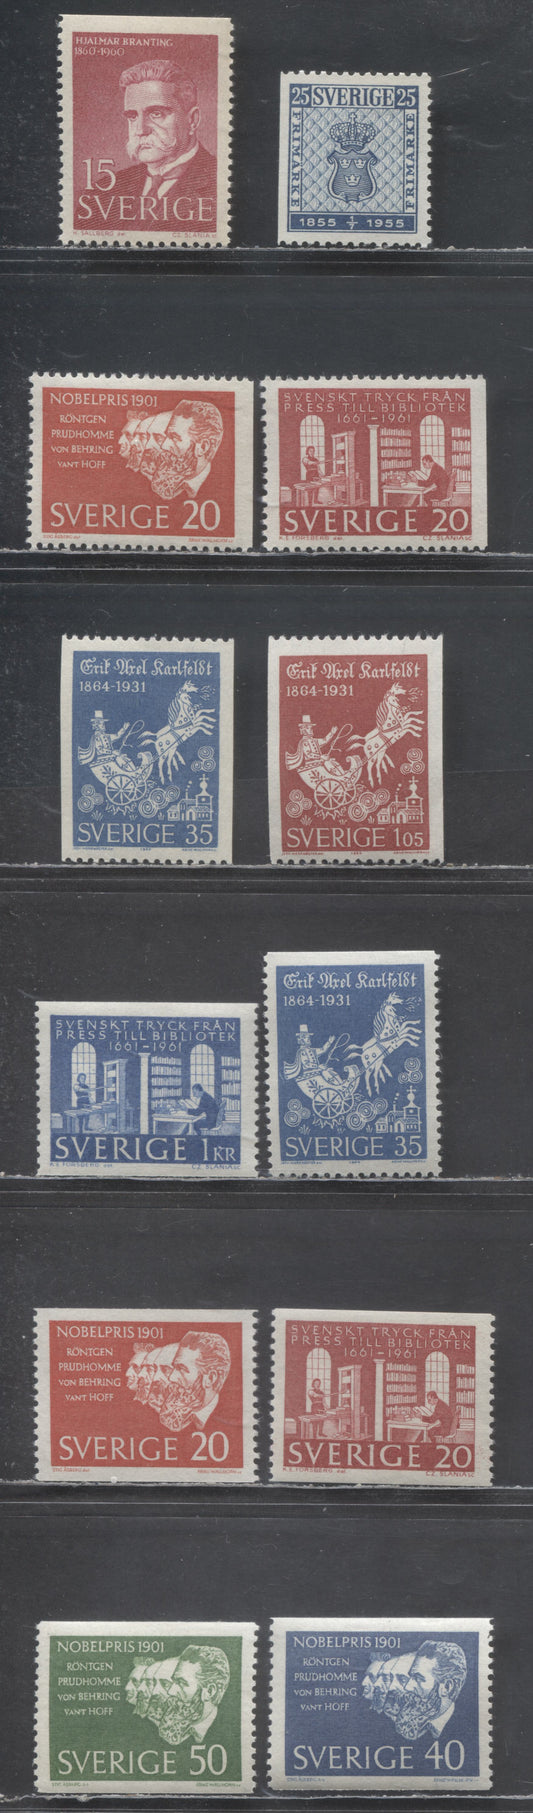 Lot 2 Sweden SC#476/642 1955 Stamp Centenary - 1964 Erik Axel Karfeldt Issues, 12 VFNH Singles, 2017 Scott Cat. $14.1